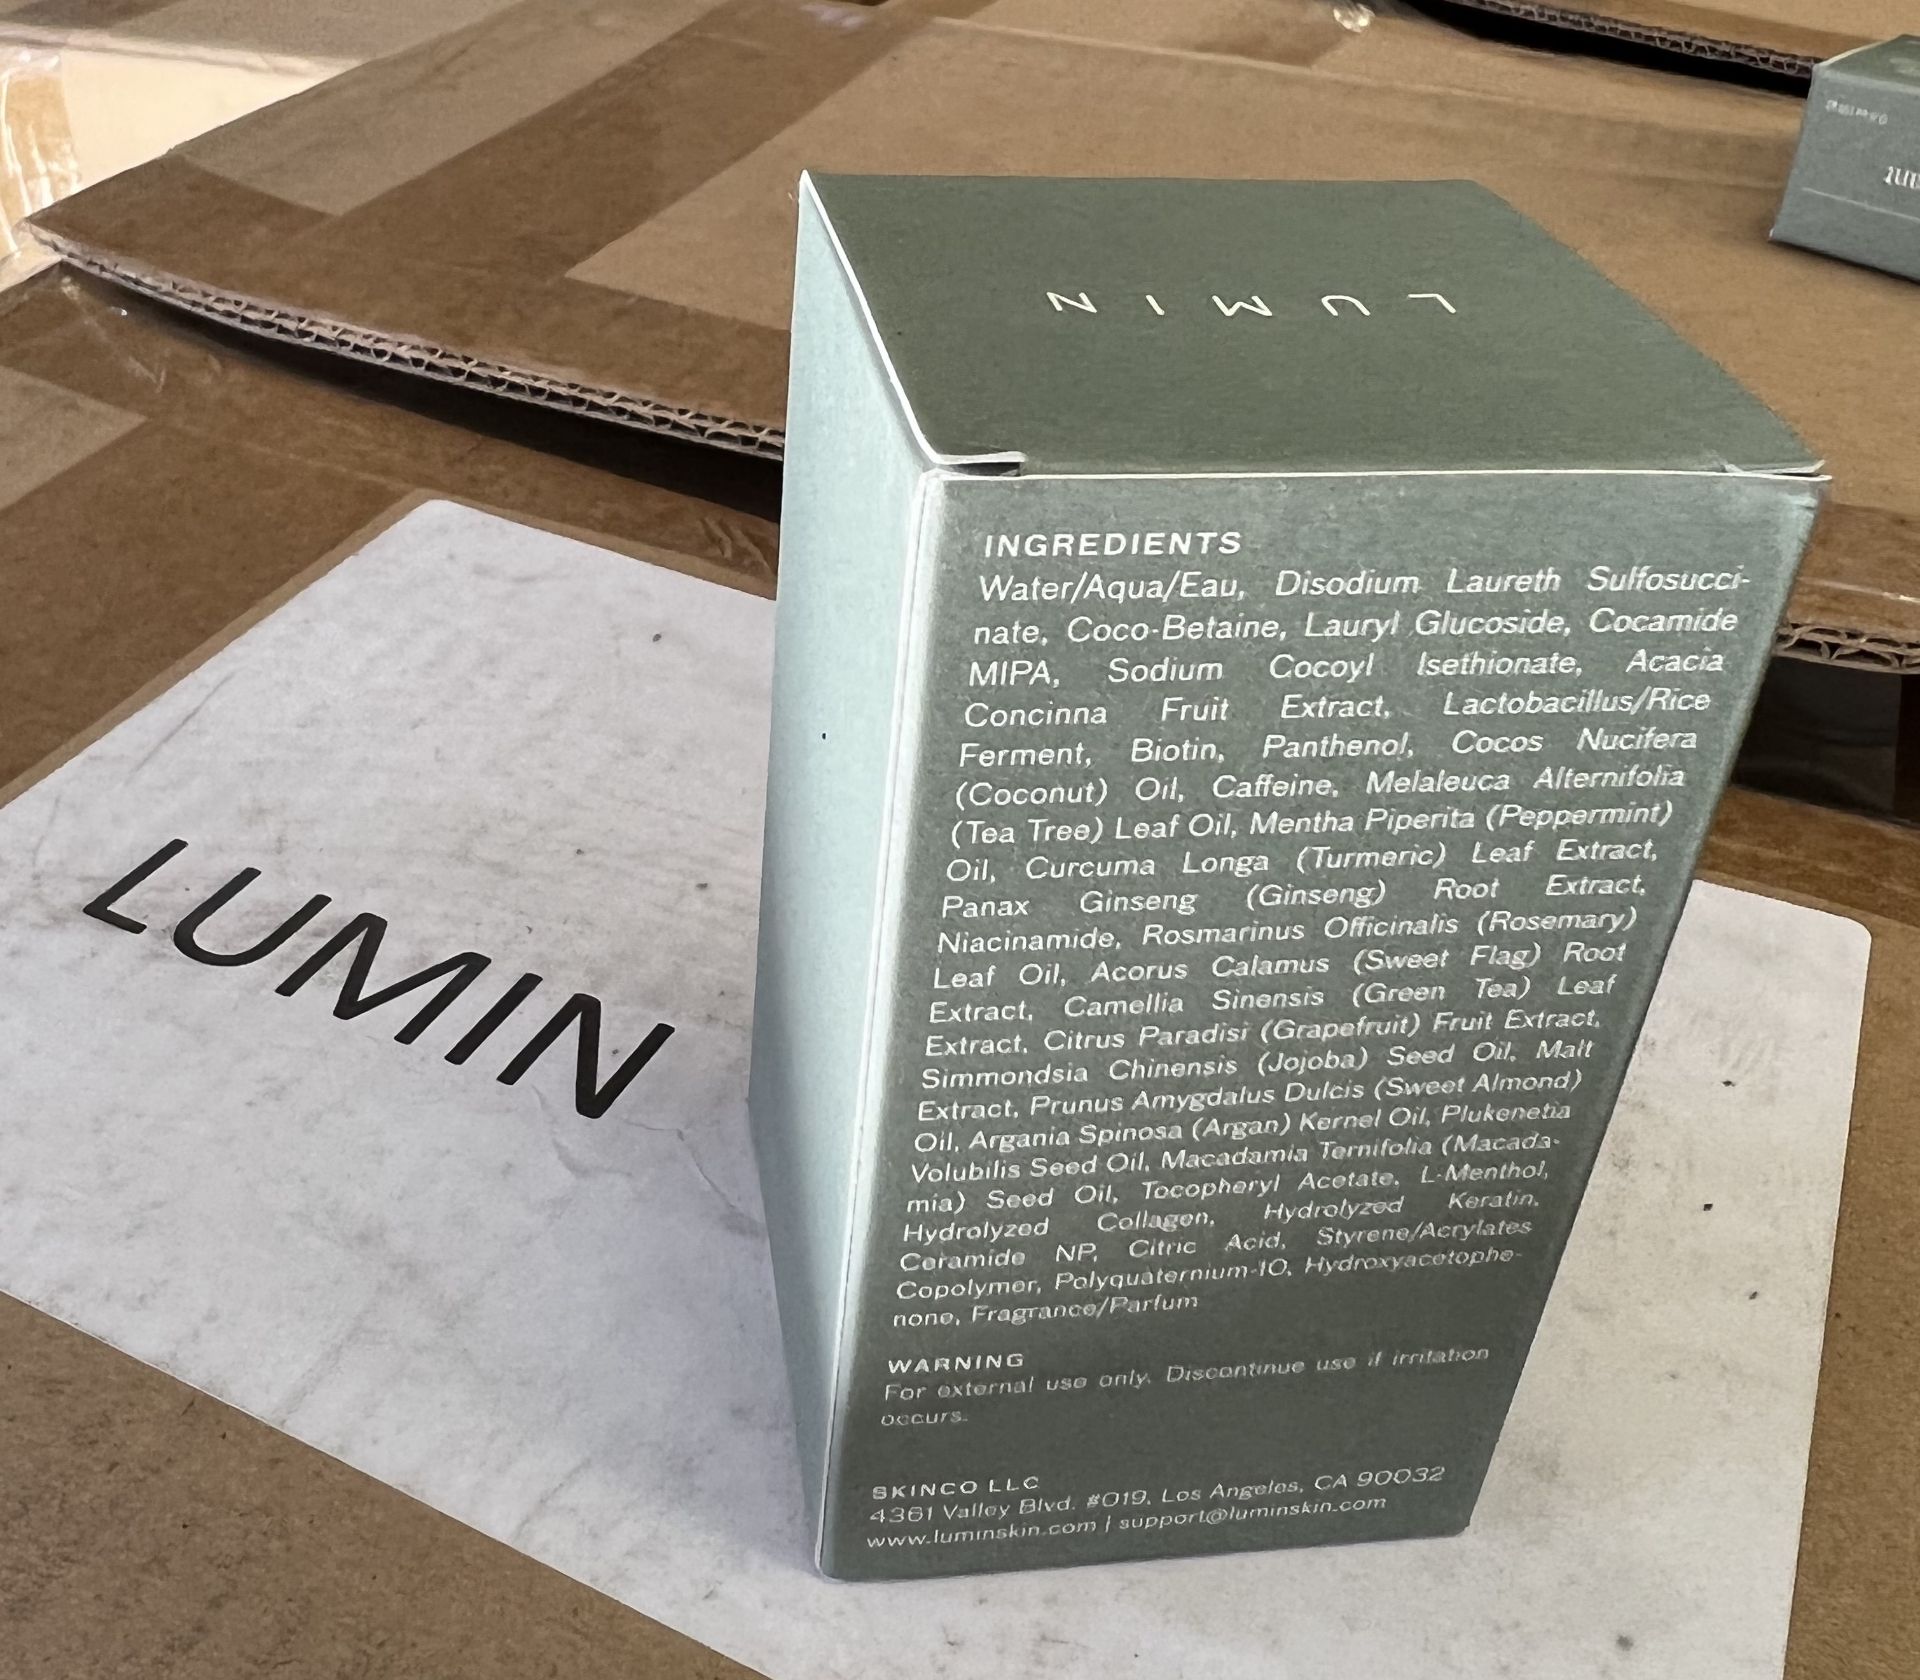 100 x Lumin Advanced Keratin Recovery Shampoo 100ml (NEW) - RRP £700+ ! - Image 4 of 4